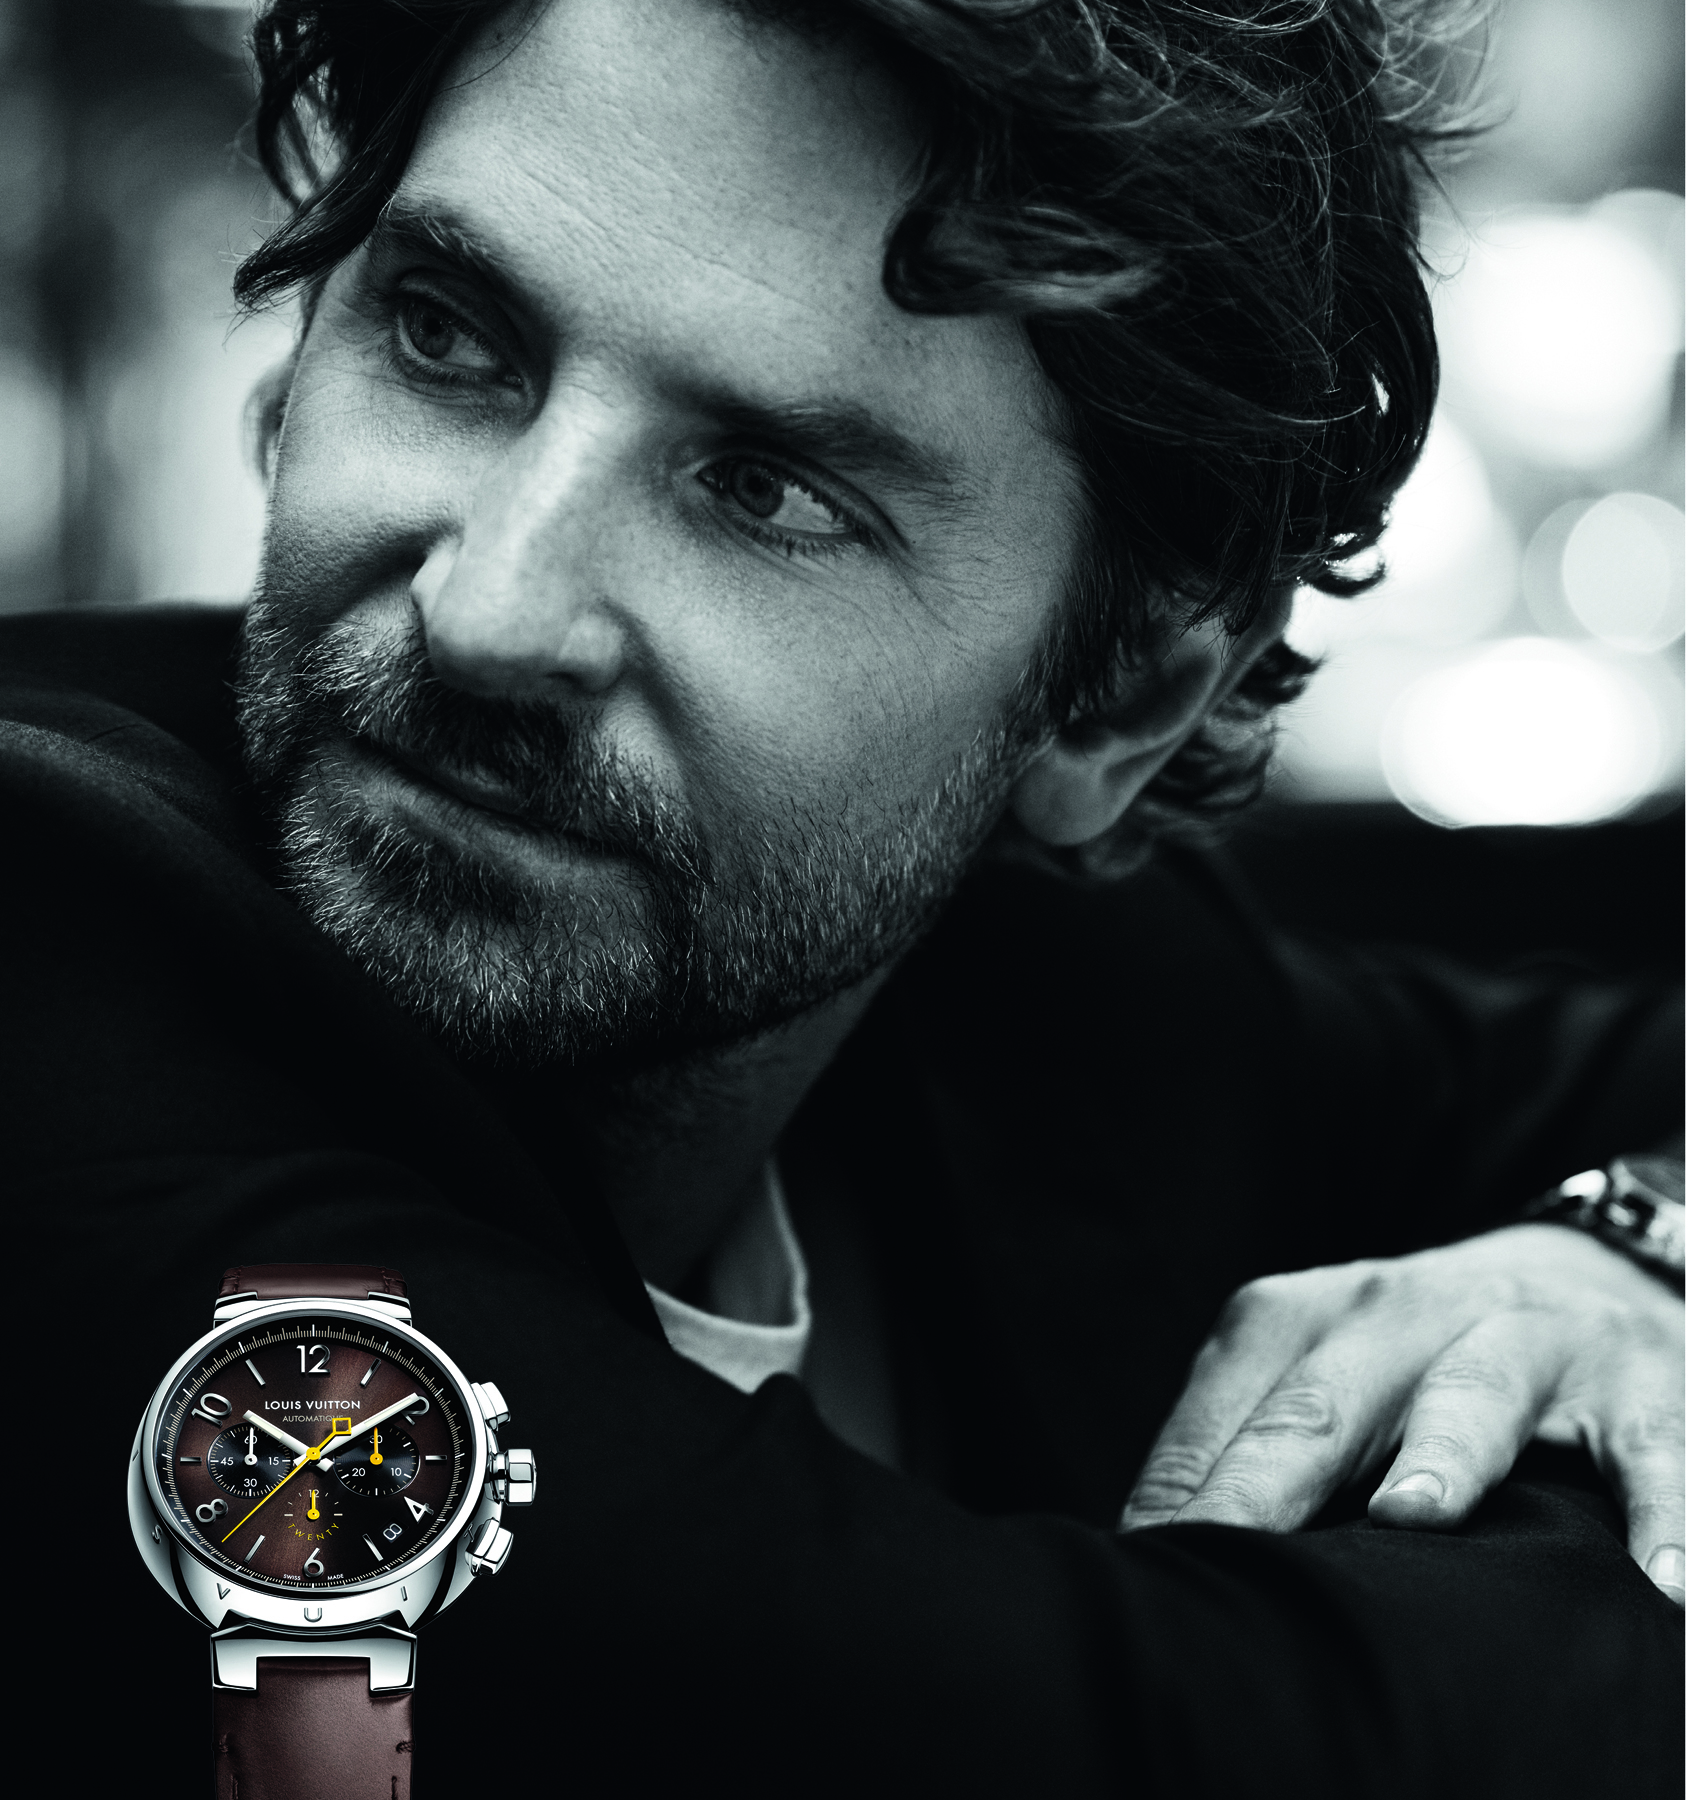 Sold at Auction: Louis Vuitton, Louis Vuitton Tambour Chronograph LV277  Watch